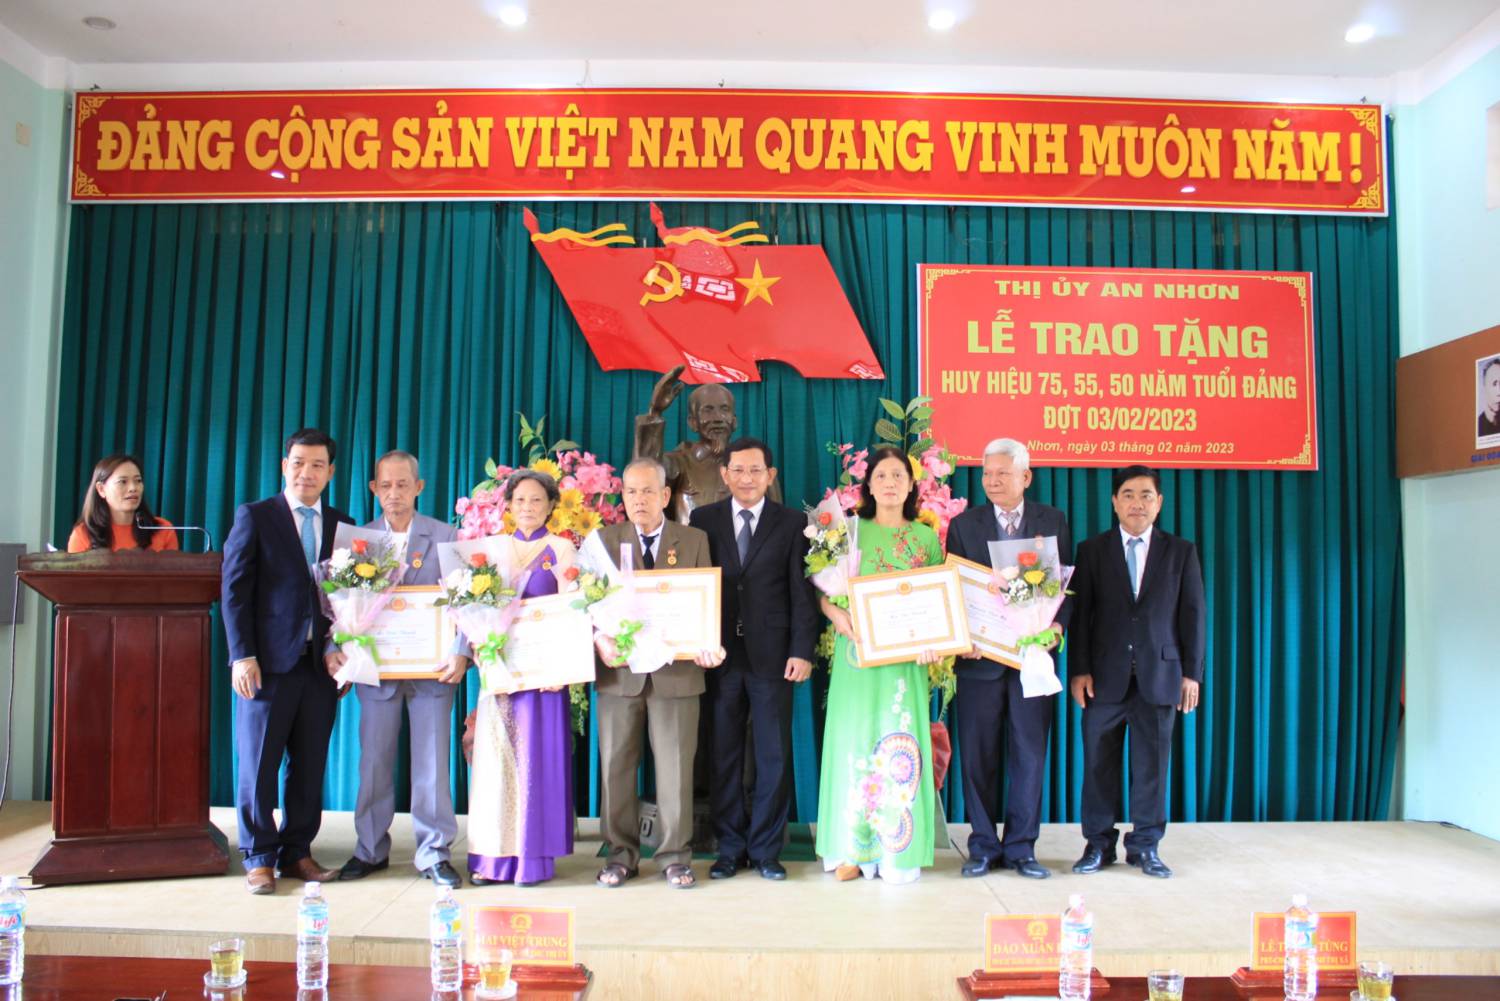 Thị ủy An Nhơn tổ chức Lễ dâng hương, dâng hoa tại Khu Di tích Chi bộ Hồng Lĩnh và trao tặng Huy hiệu Đảng đợt 3/2/2023